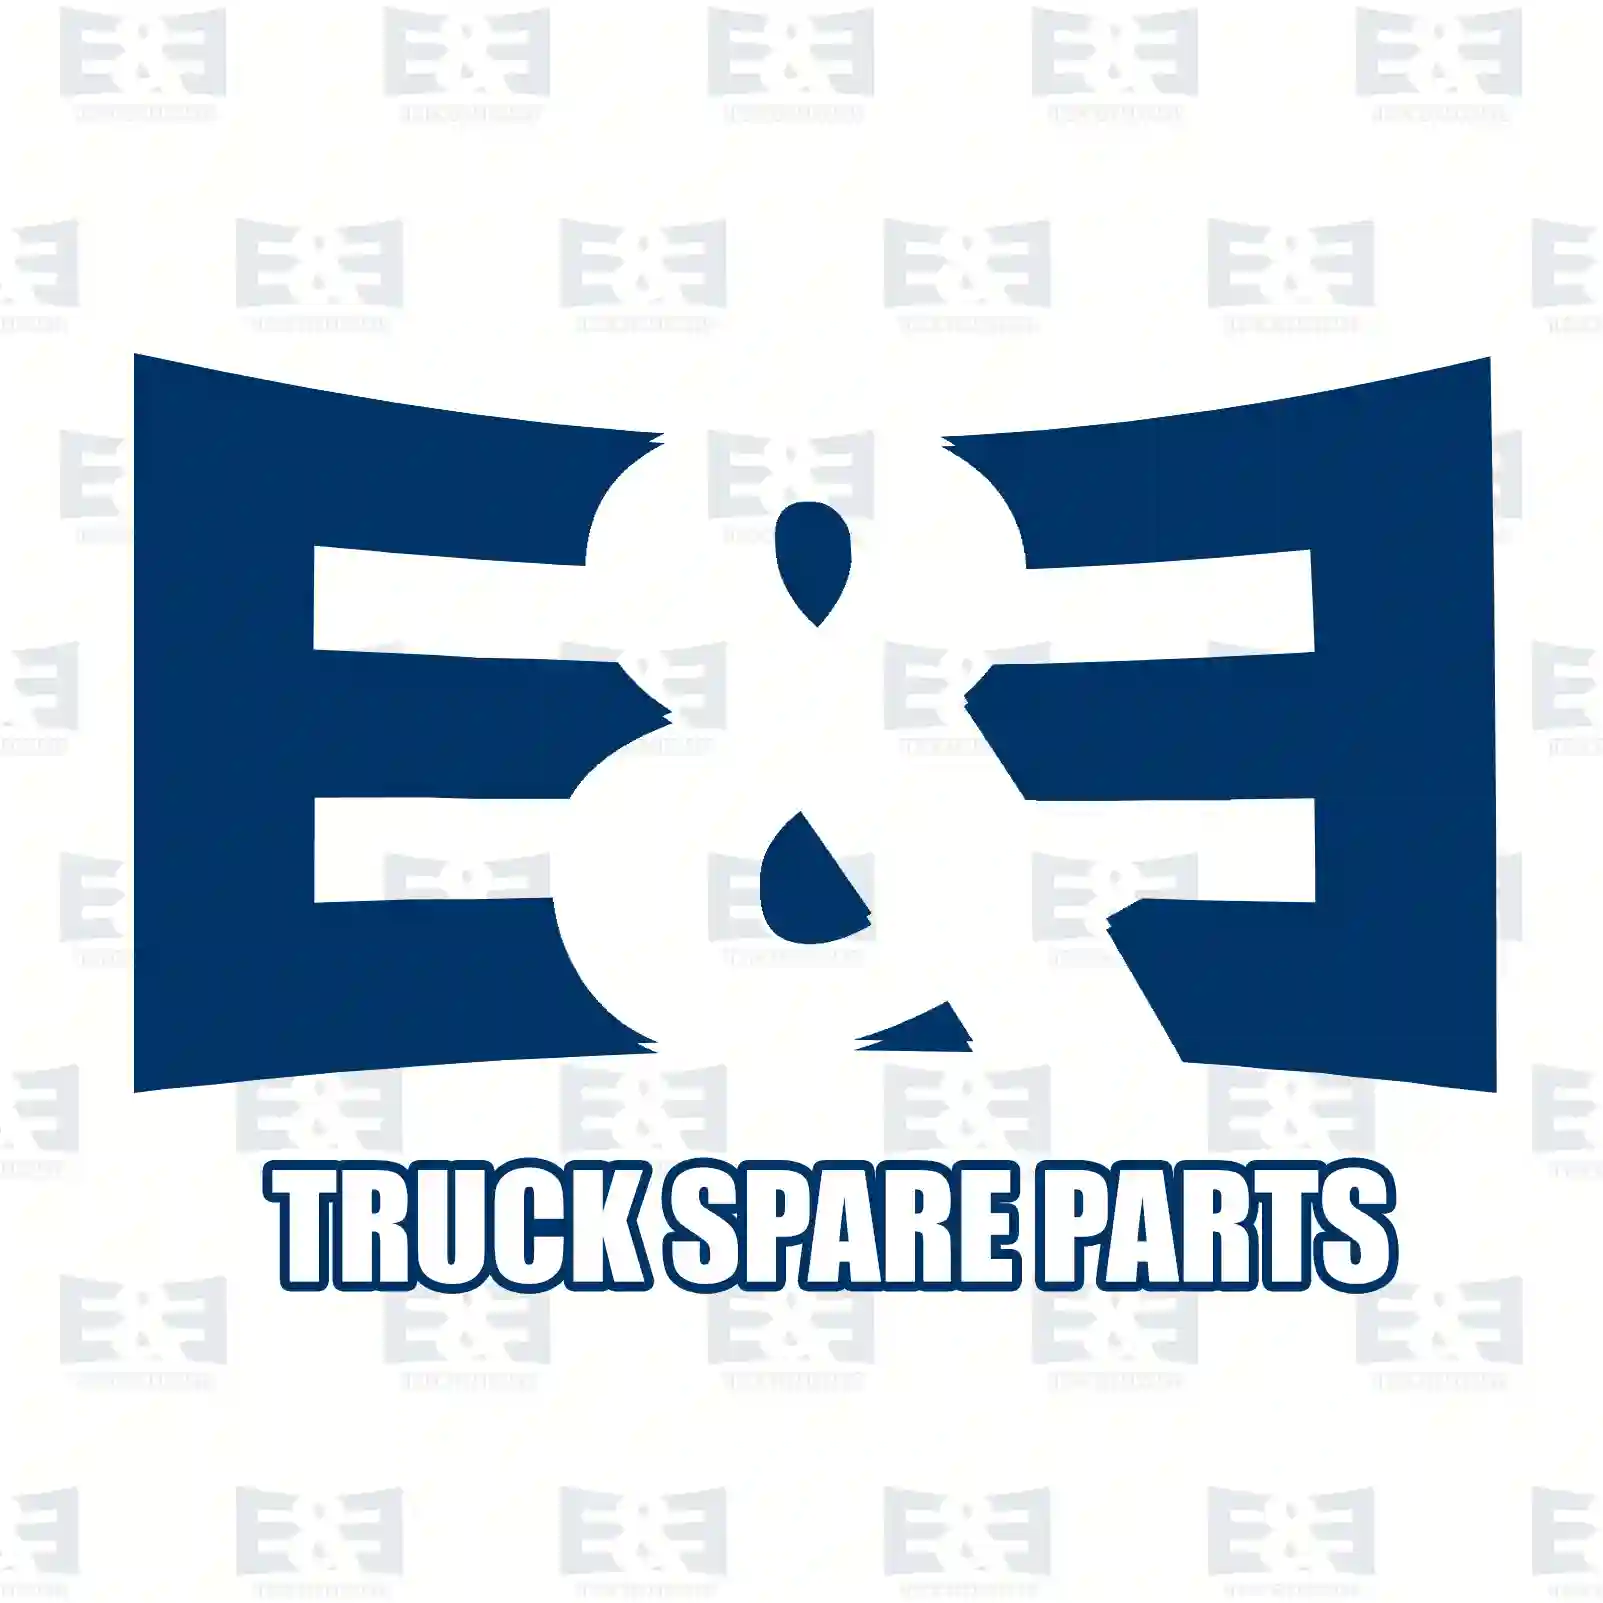 O-ring, 2E2285870, 412038, 469205, ZG02878-0008, ||  2E2285870 E&E Truck Spare Parts | Truck Spare Parts, Auotomotive Spare Parts O-ring, 2E2285870, 412038, 469205, ZG02878-0008, ||  2E2285870 E&E Truck Spare Parts | Truck Spare Parts, Auotomotive Spare Parts